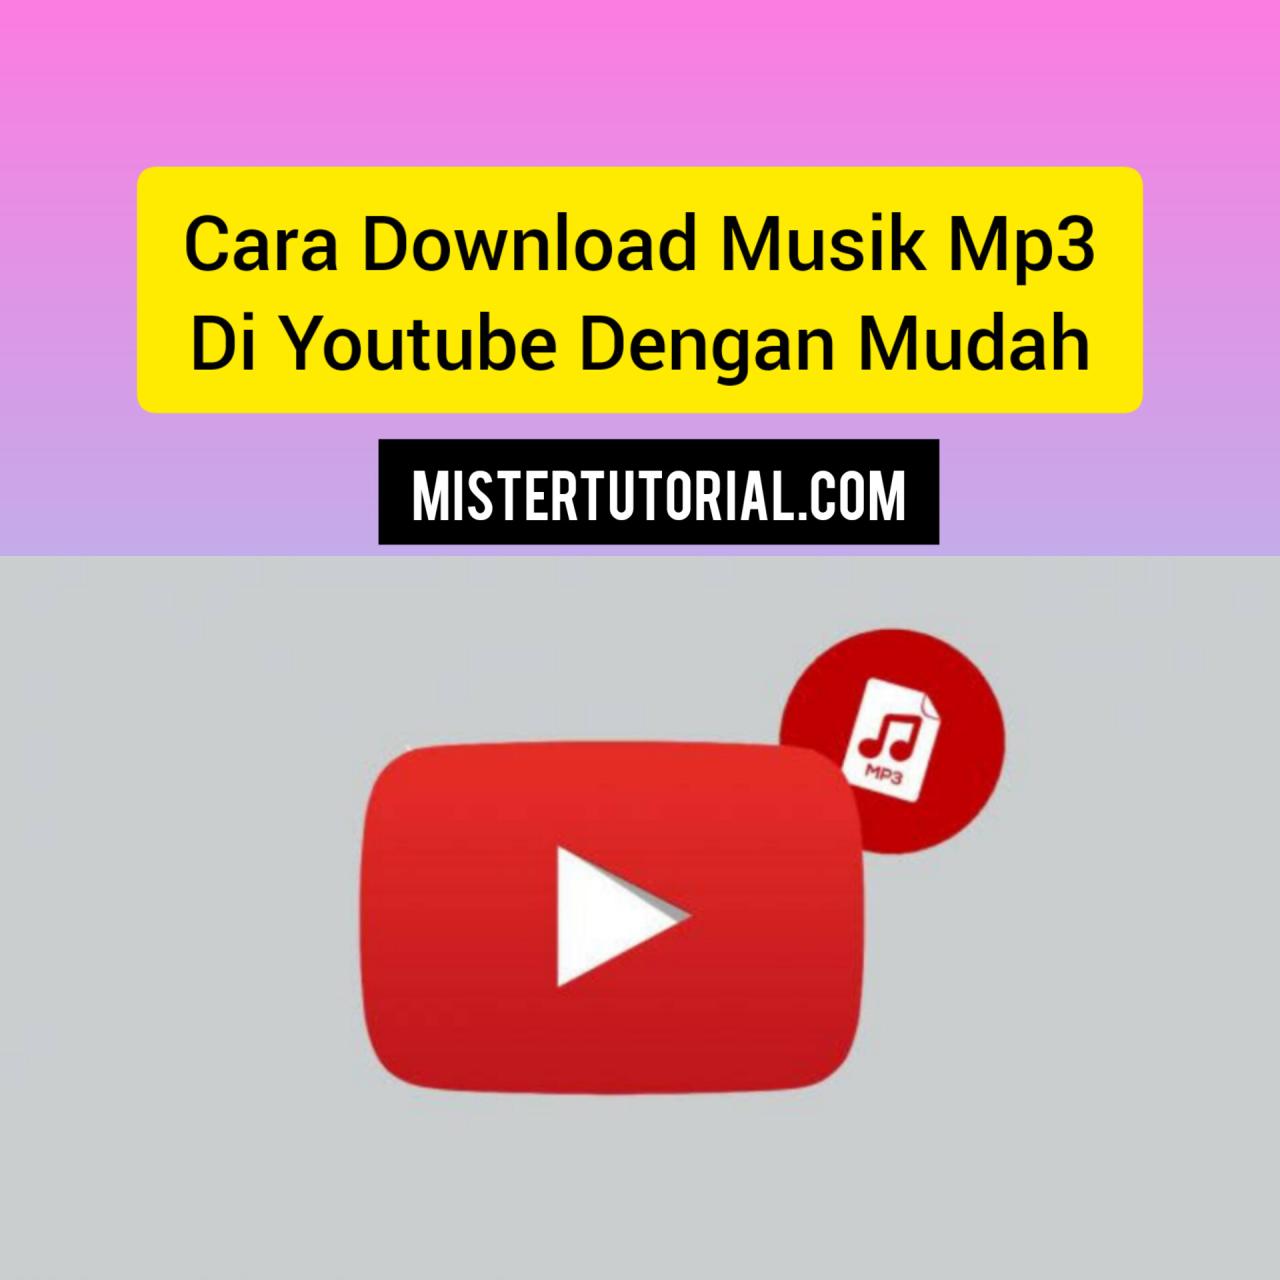 cara download musik mp3 dari youtube terbaru